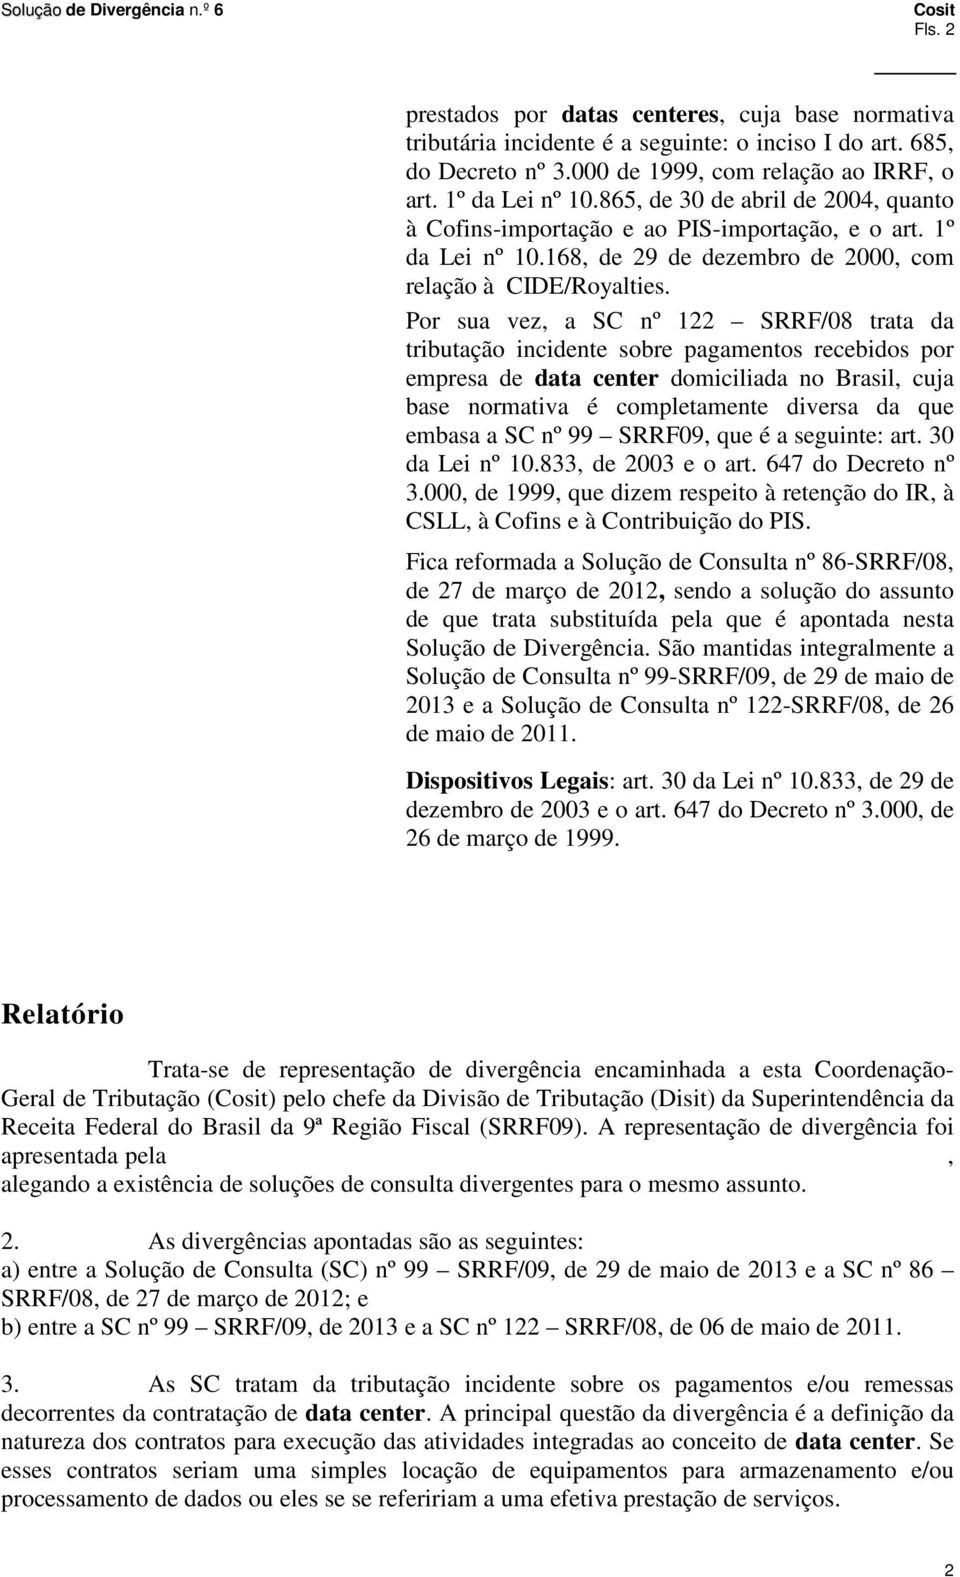 Por sua vez, a SC nº 122 SRRF/08 trata da tributação incidente sobre pagamentos recebidos por empresa de data center domiciliada no Brasil, cuja base normativa é completamente diversa da que embasa a